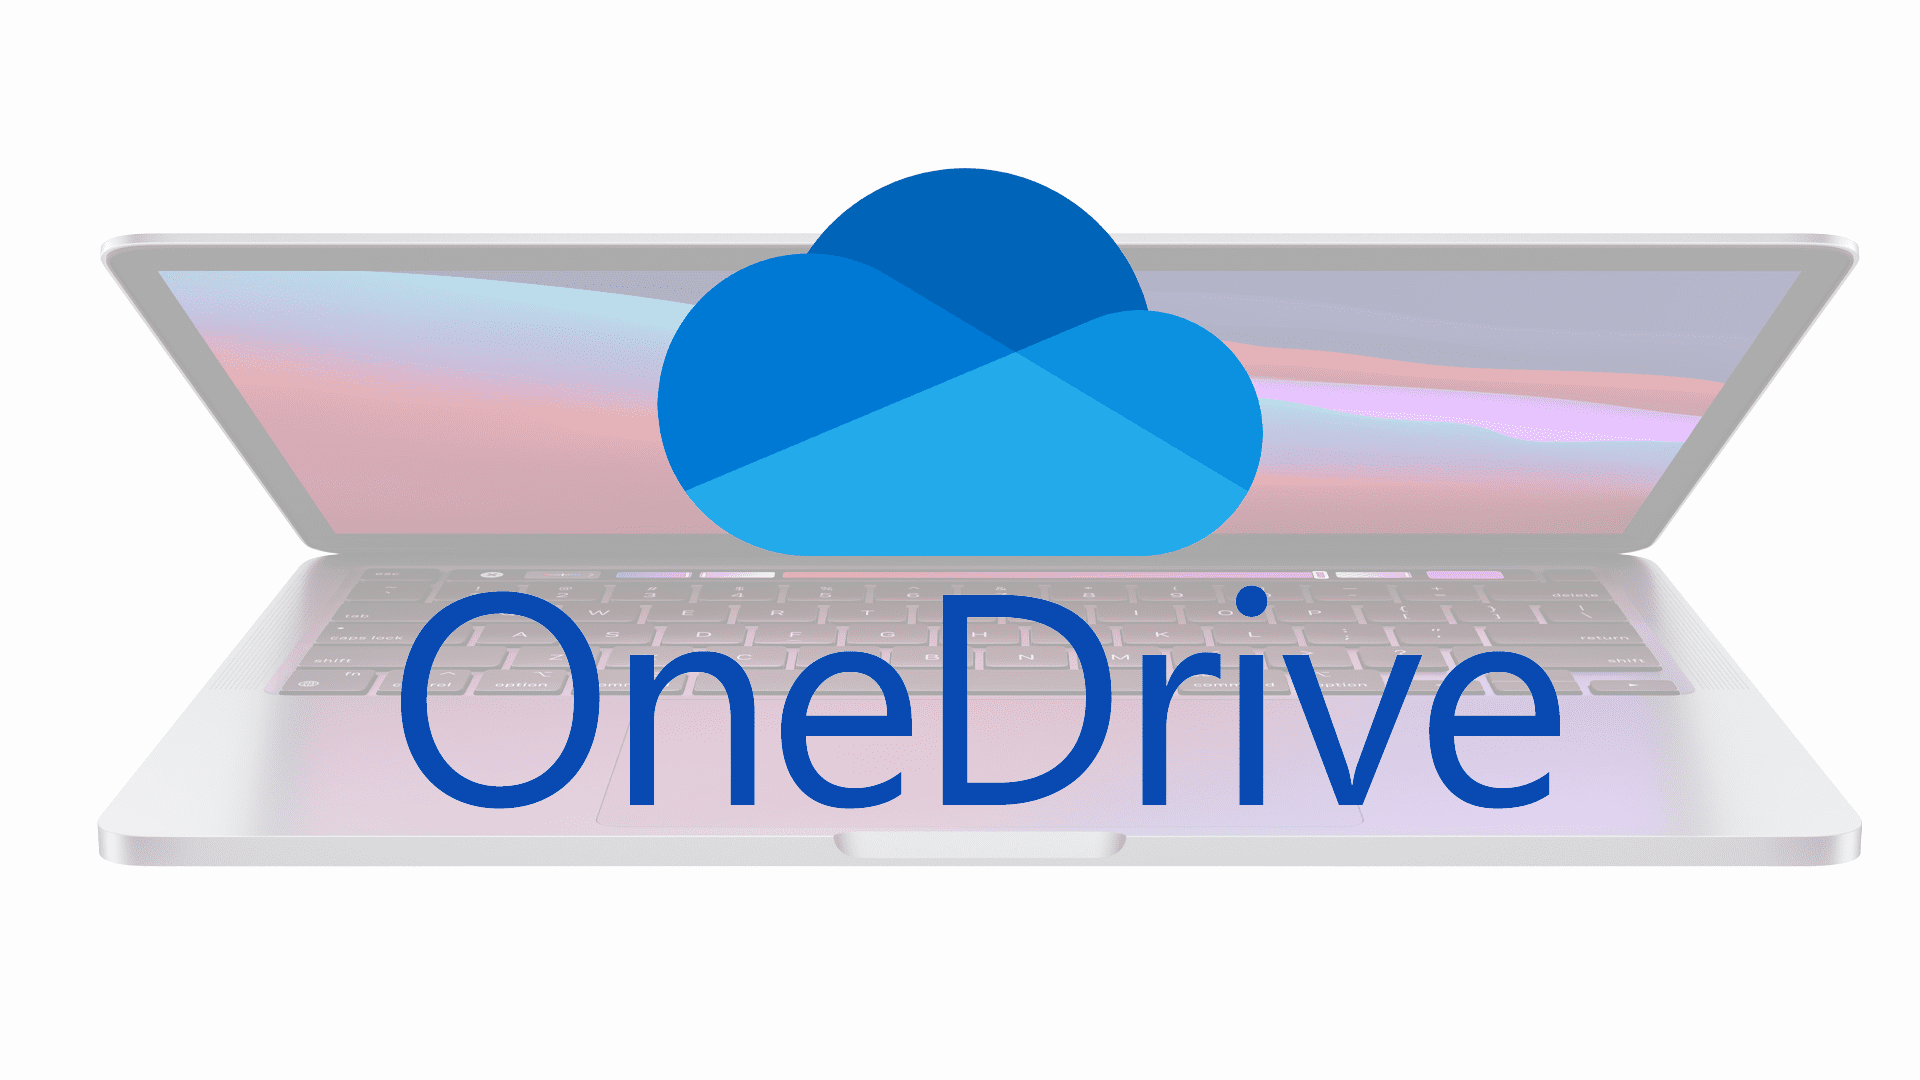 OneDrive hiện là giải pháp thay thế iCloud tốt nhất cho người dùng Mac, đây là lý do